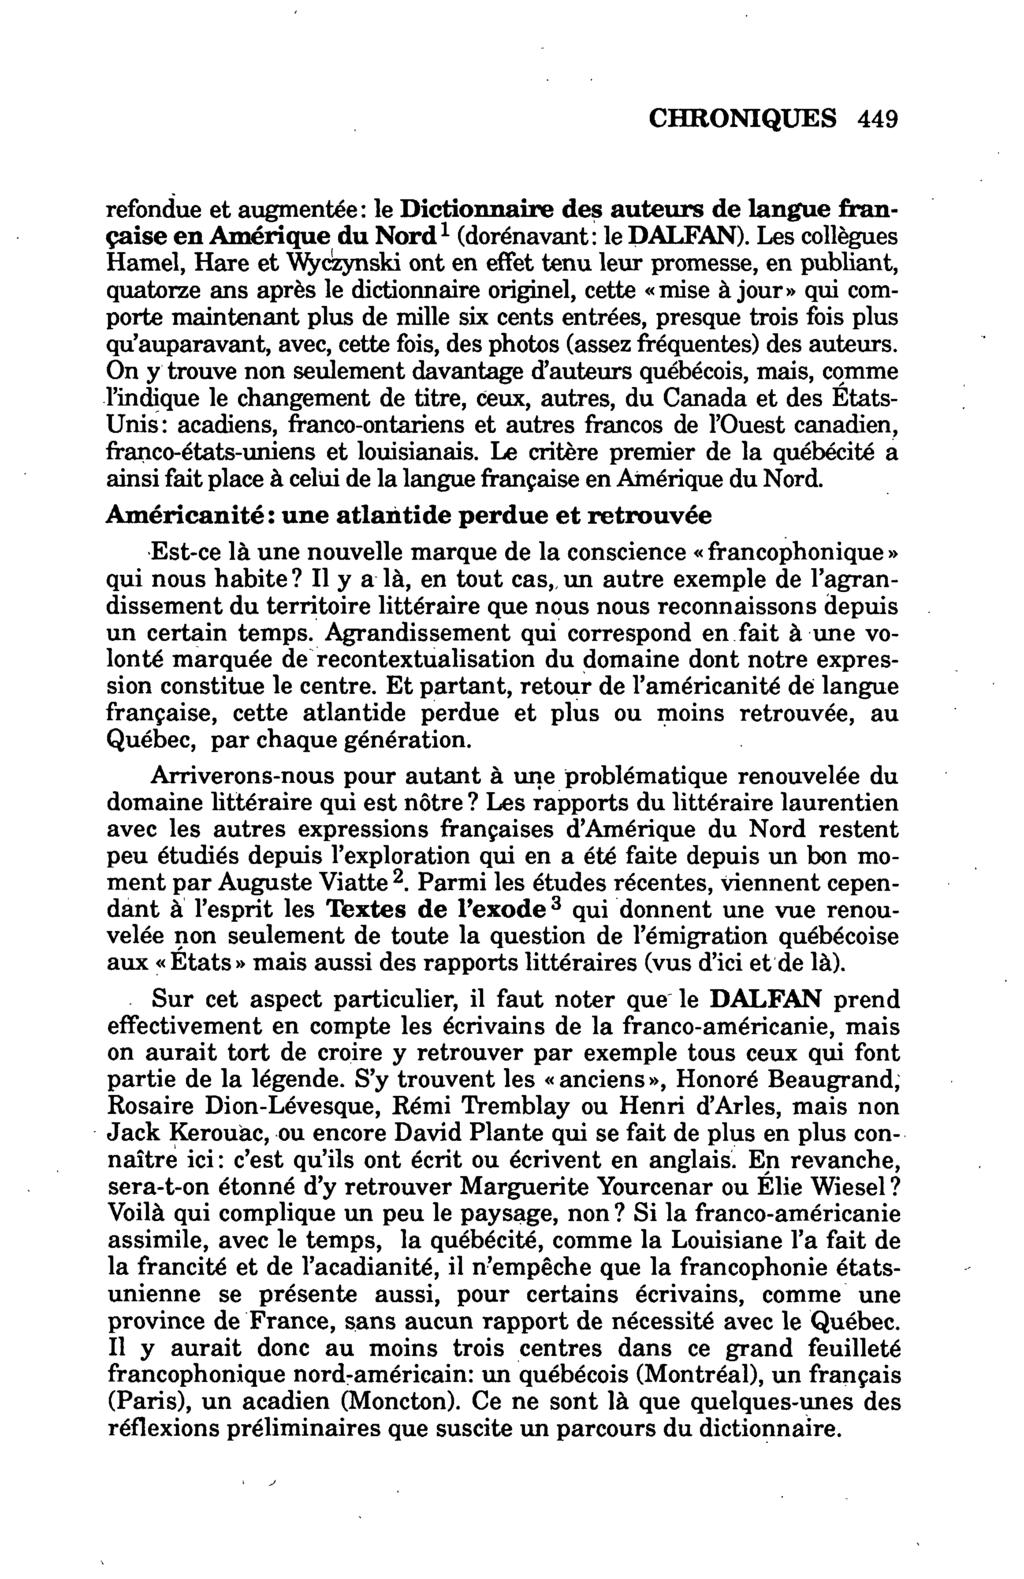 refondue et augmentée: le Dictionnaire des auteurs de langue française en Amérique du Nord 1 (dorénavant: le DALFAN).